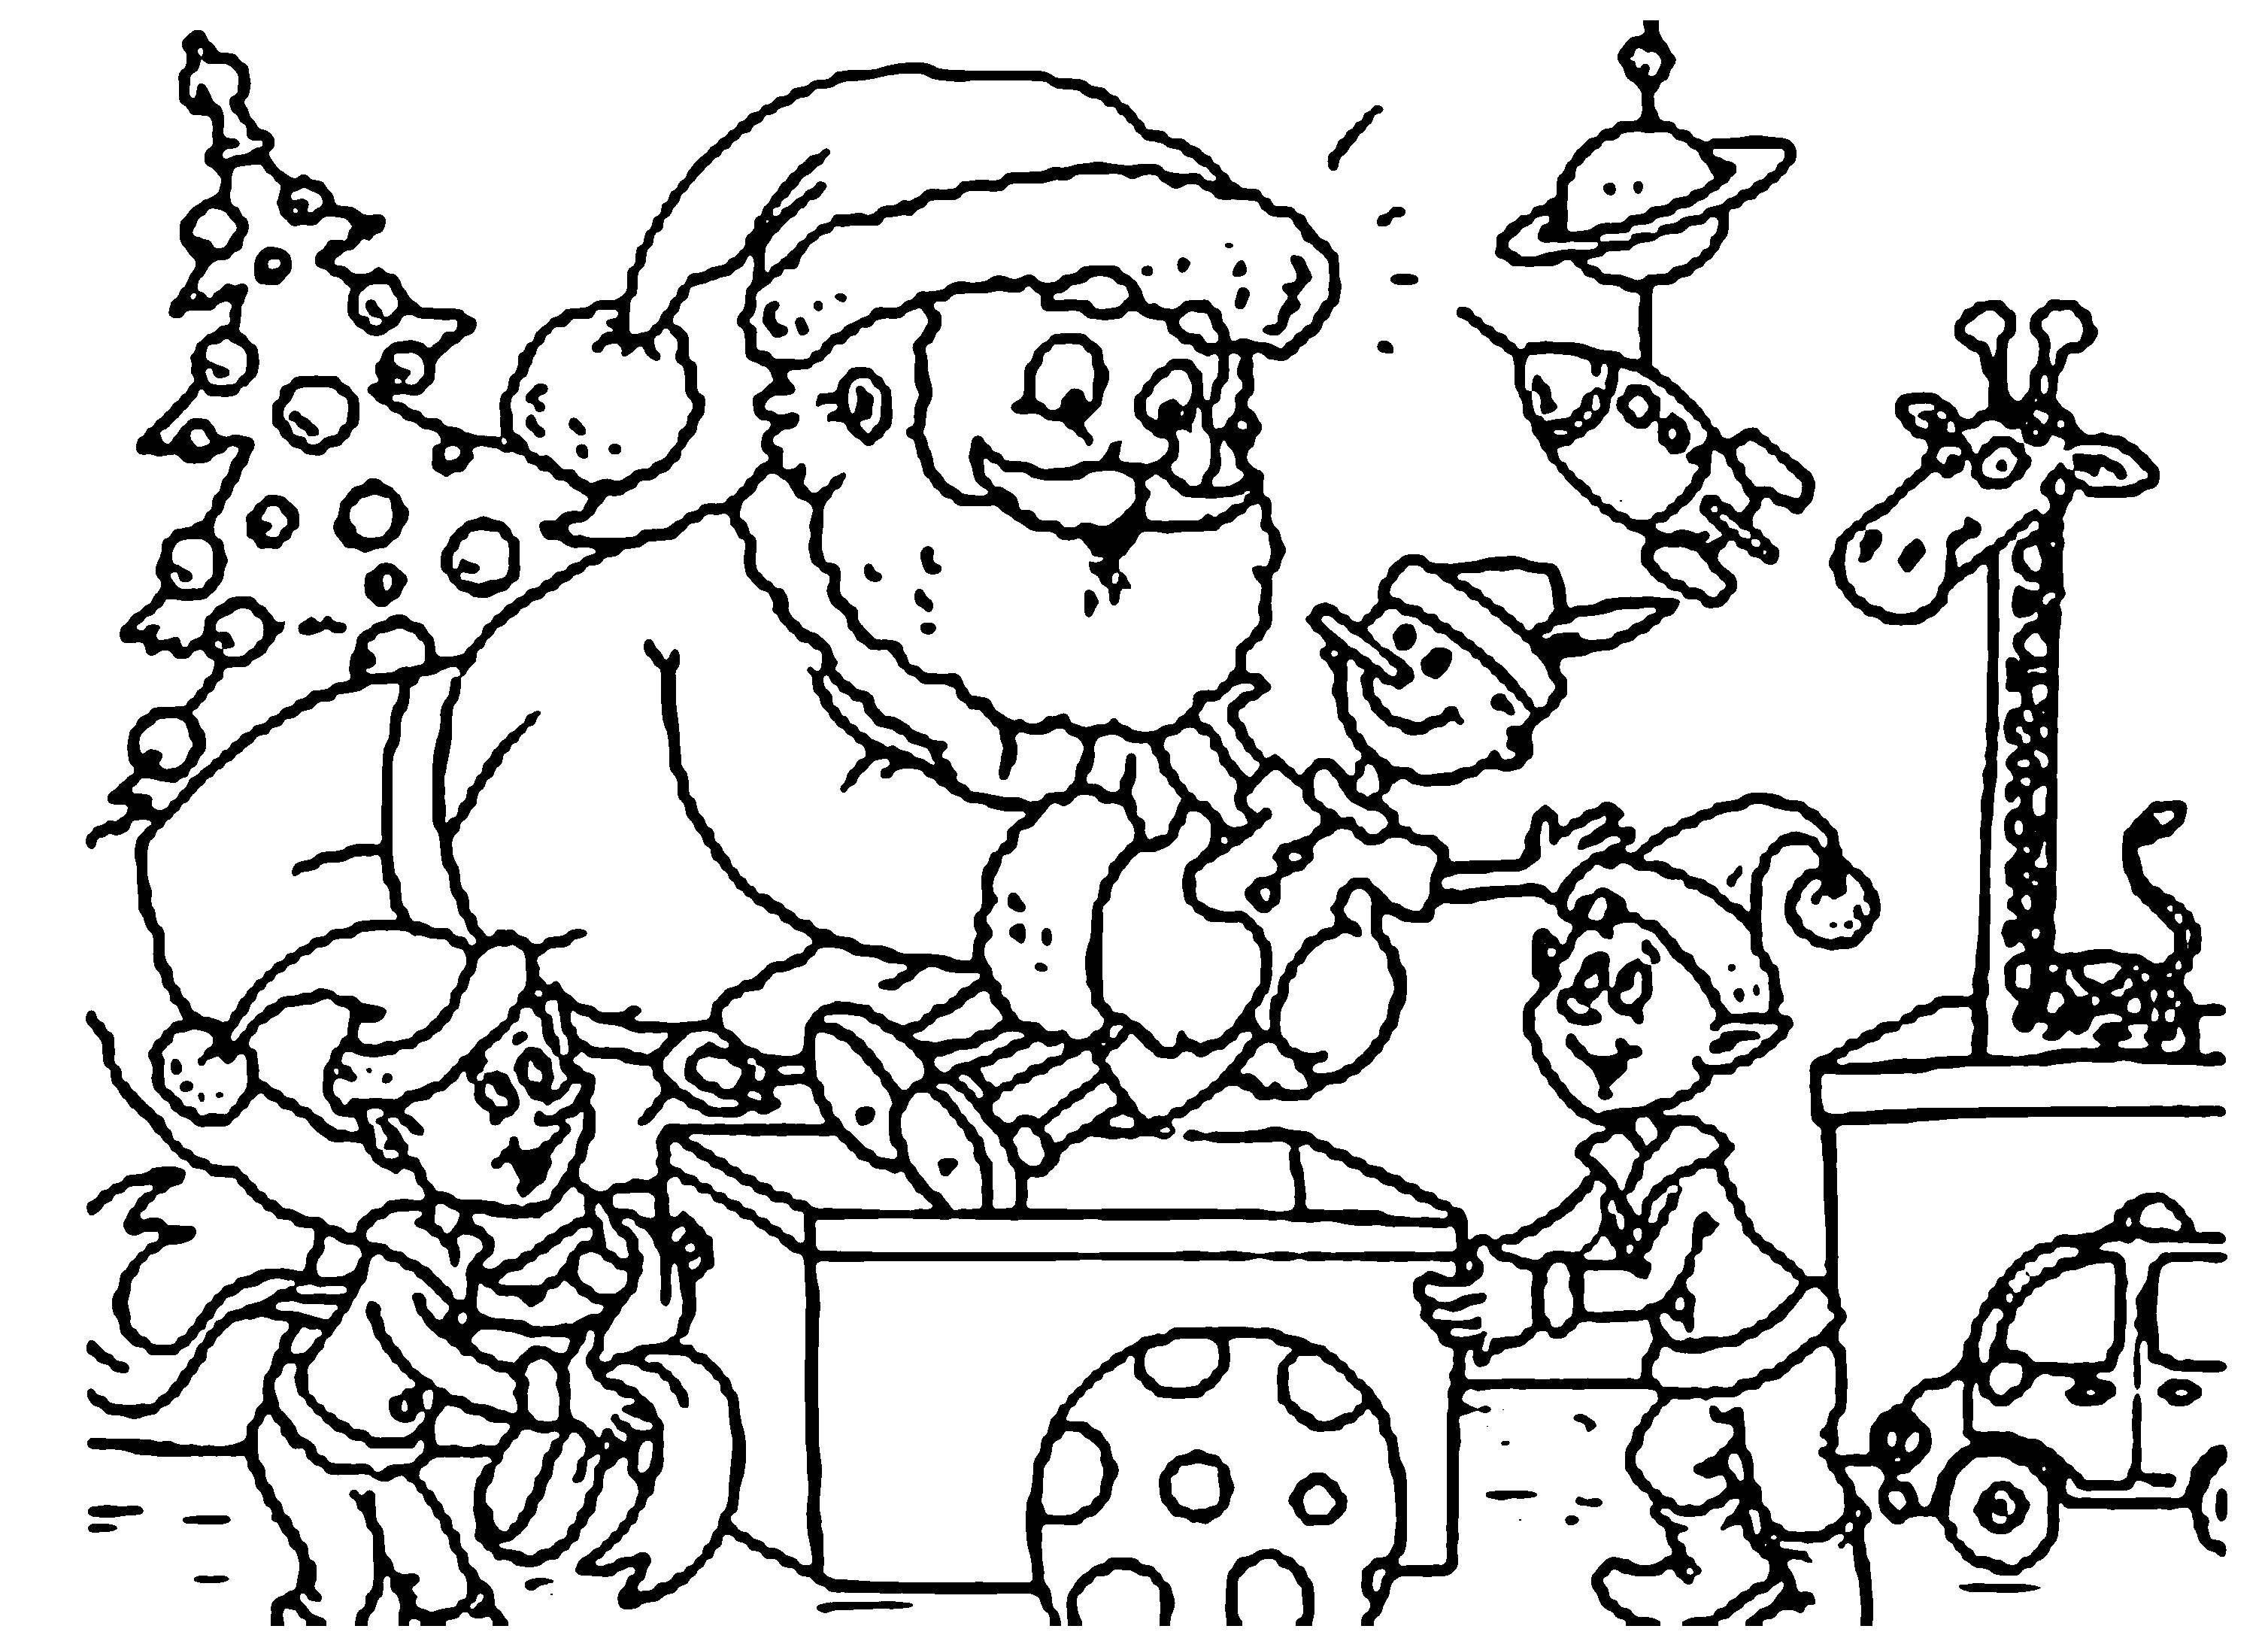 Coloring Santa sort presents. Category Christmas. Tags:  Christmas, Santa Claus, gifts.